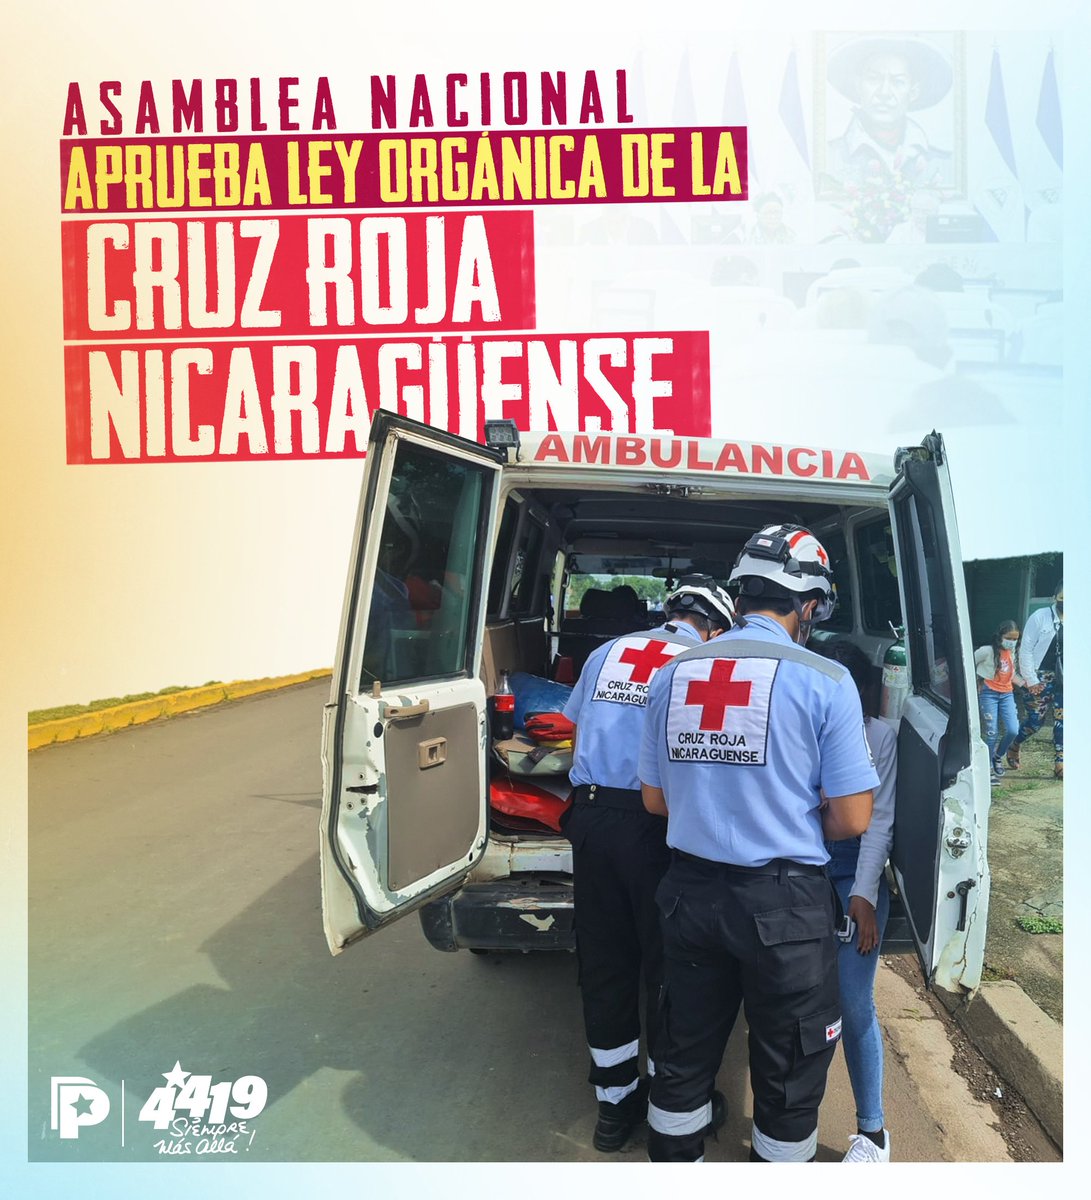 #Avance| Los diputados de la Asamblea Nacional aprobaron este jueves #1Junio la Ley Orgánica de la Cruz Roja, que permitirá un mejor funcionamiento de esta institución humanitaria. 🇳🇮⛑

“La Ley Orgánica de la Cruz Roja Nicaragüense detalla la organización, funcionamiento,